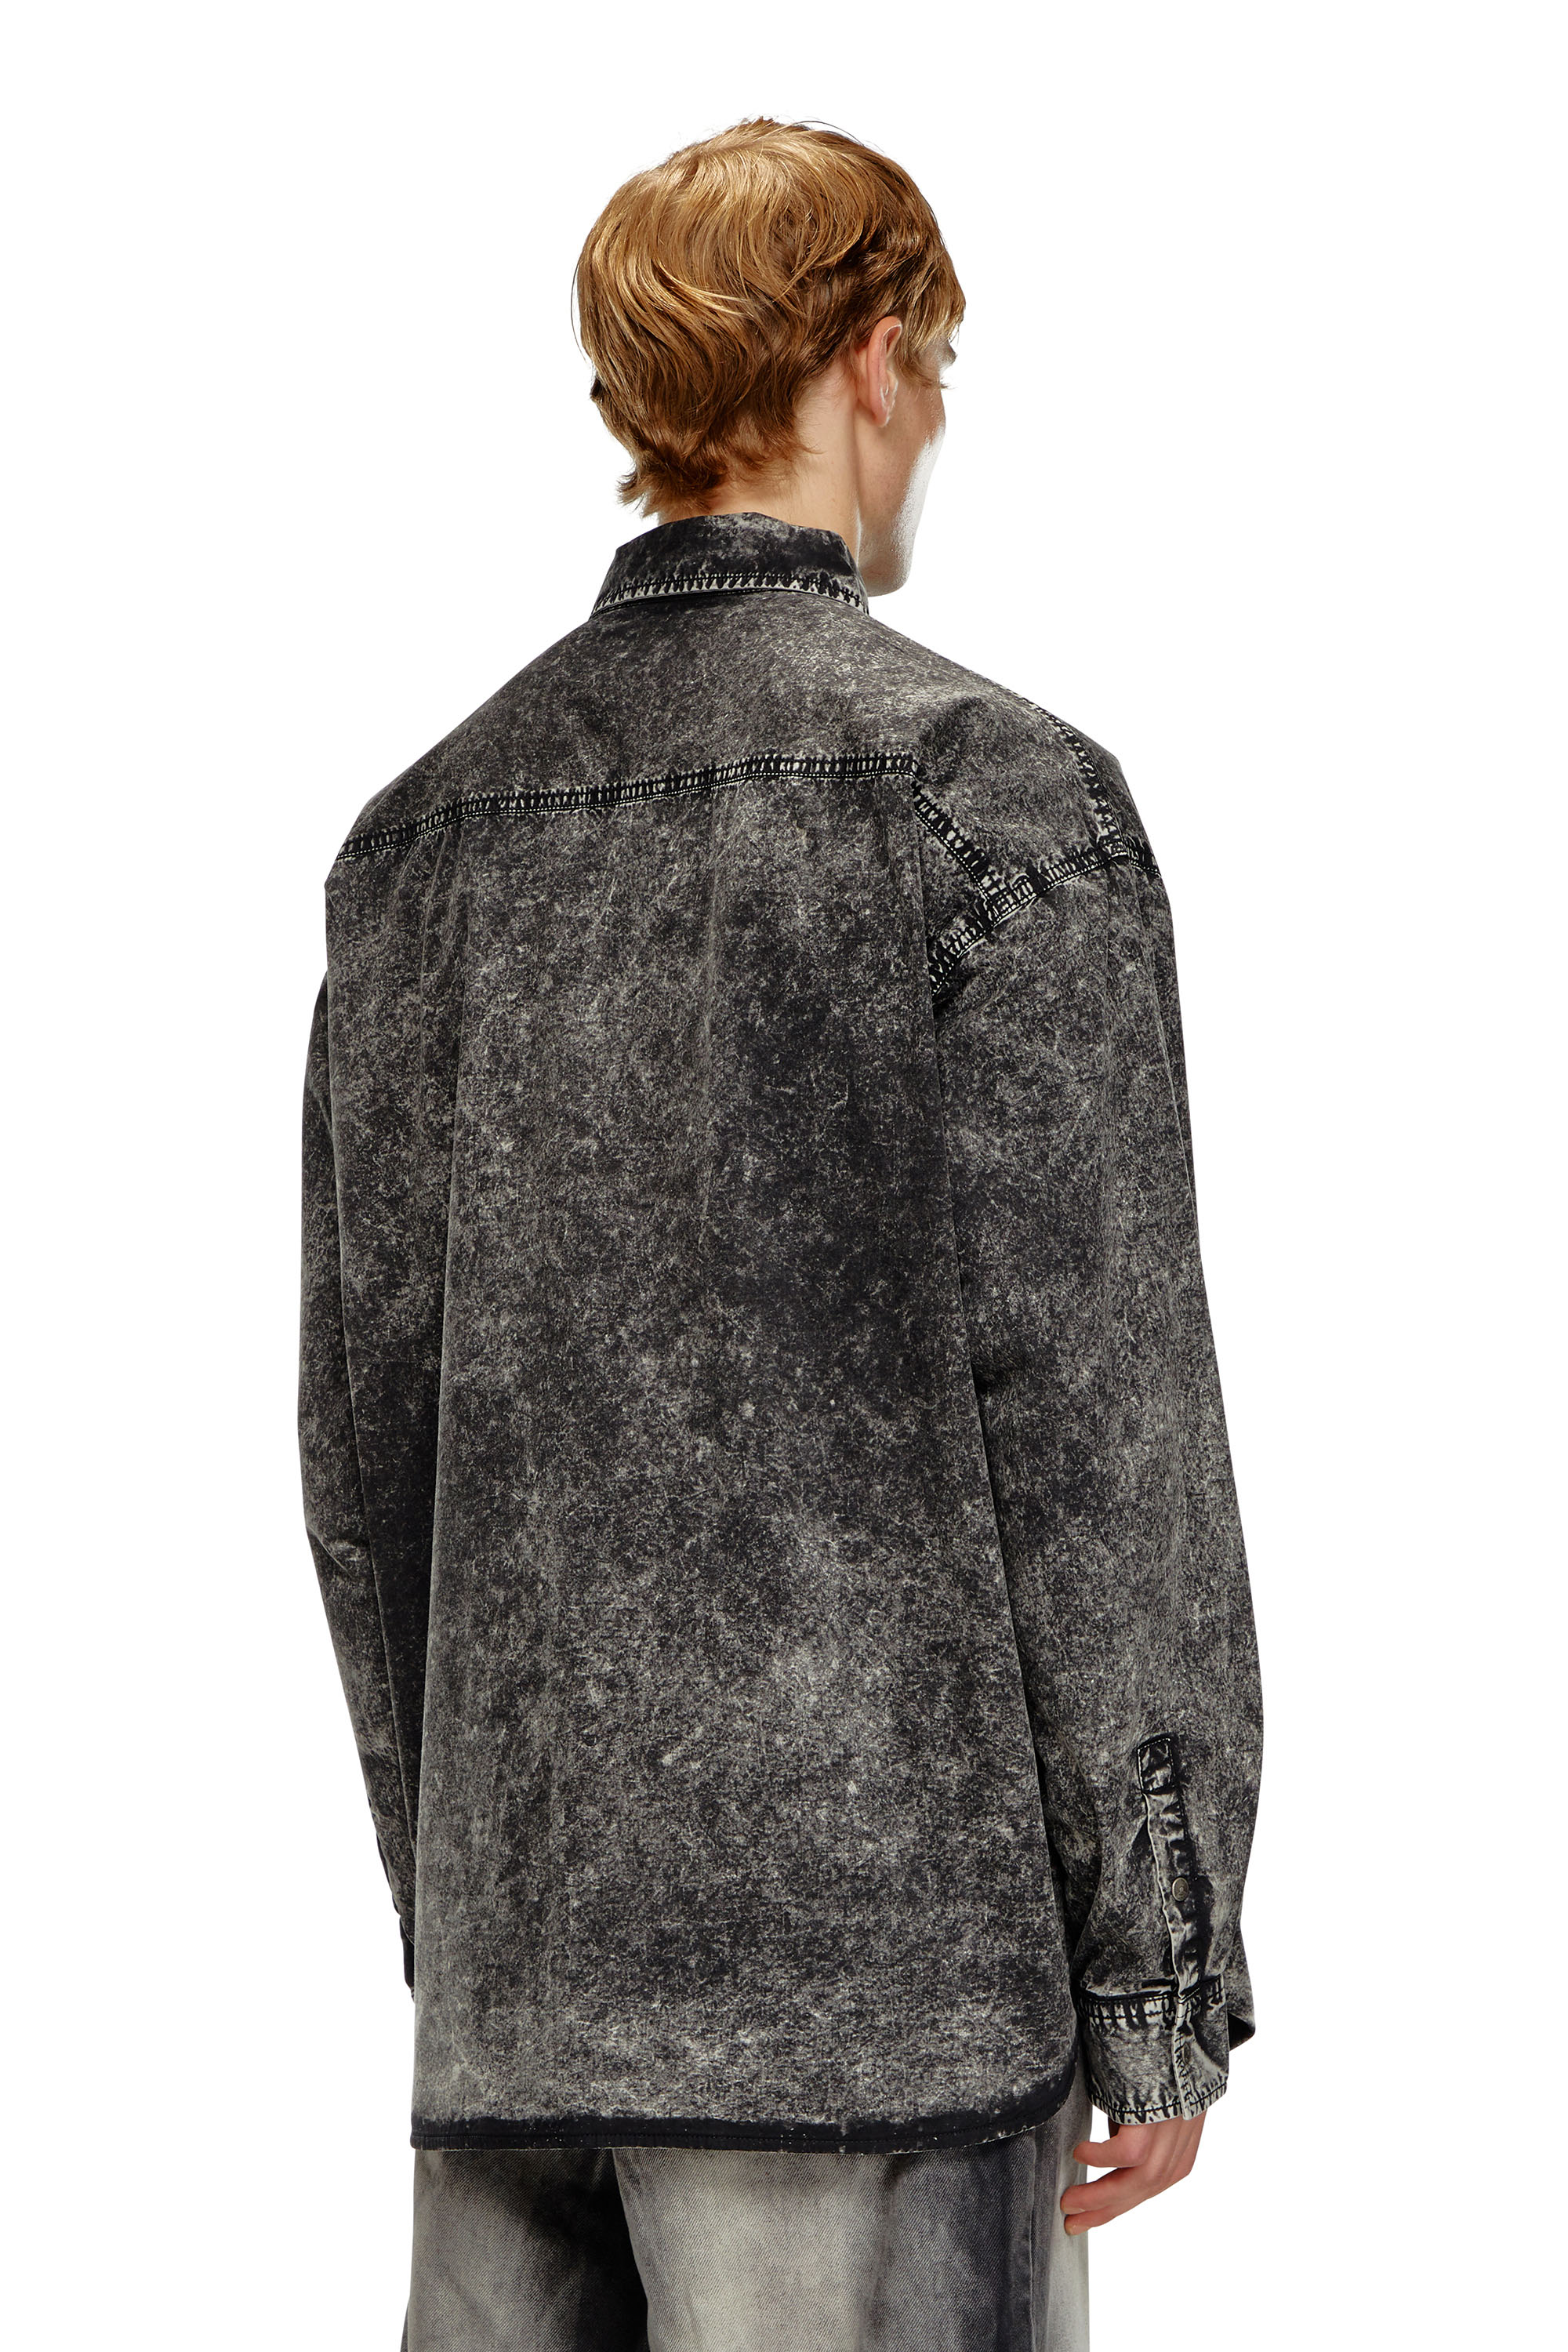 Diesel - S-VEKEN, Male Shirt in marbled cotton in ブラック - Image 4